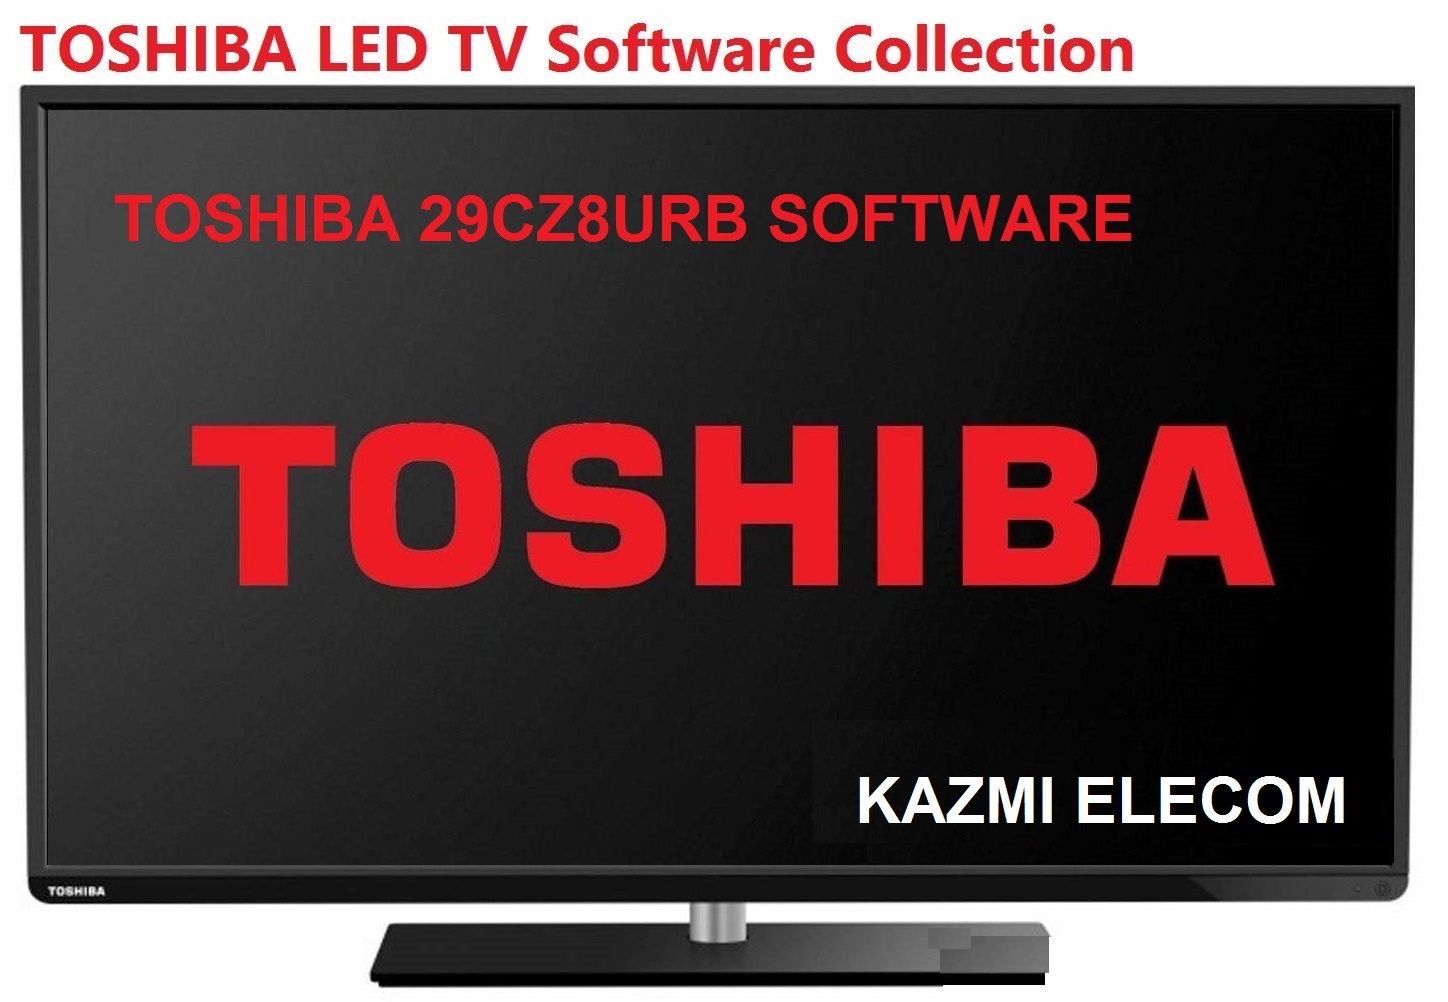 Toshiba 29Cz8Urb